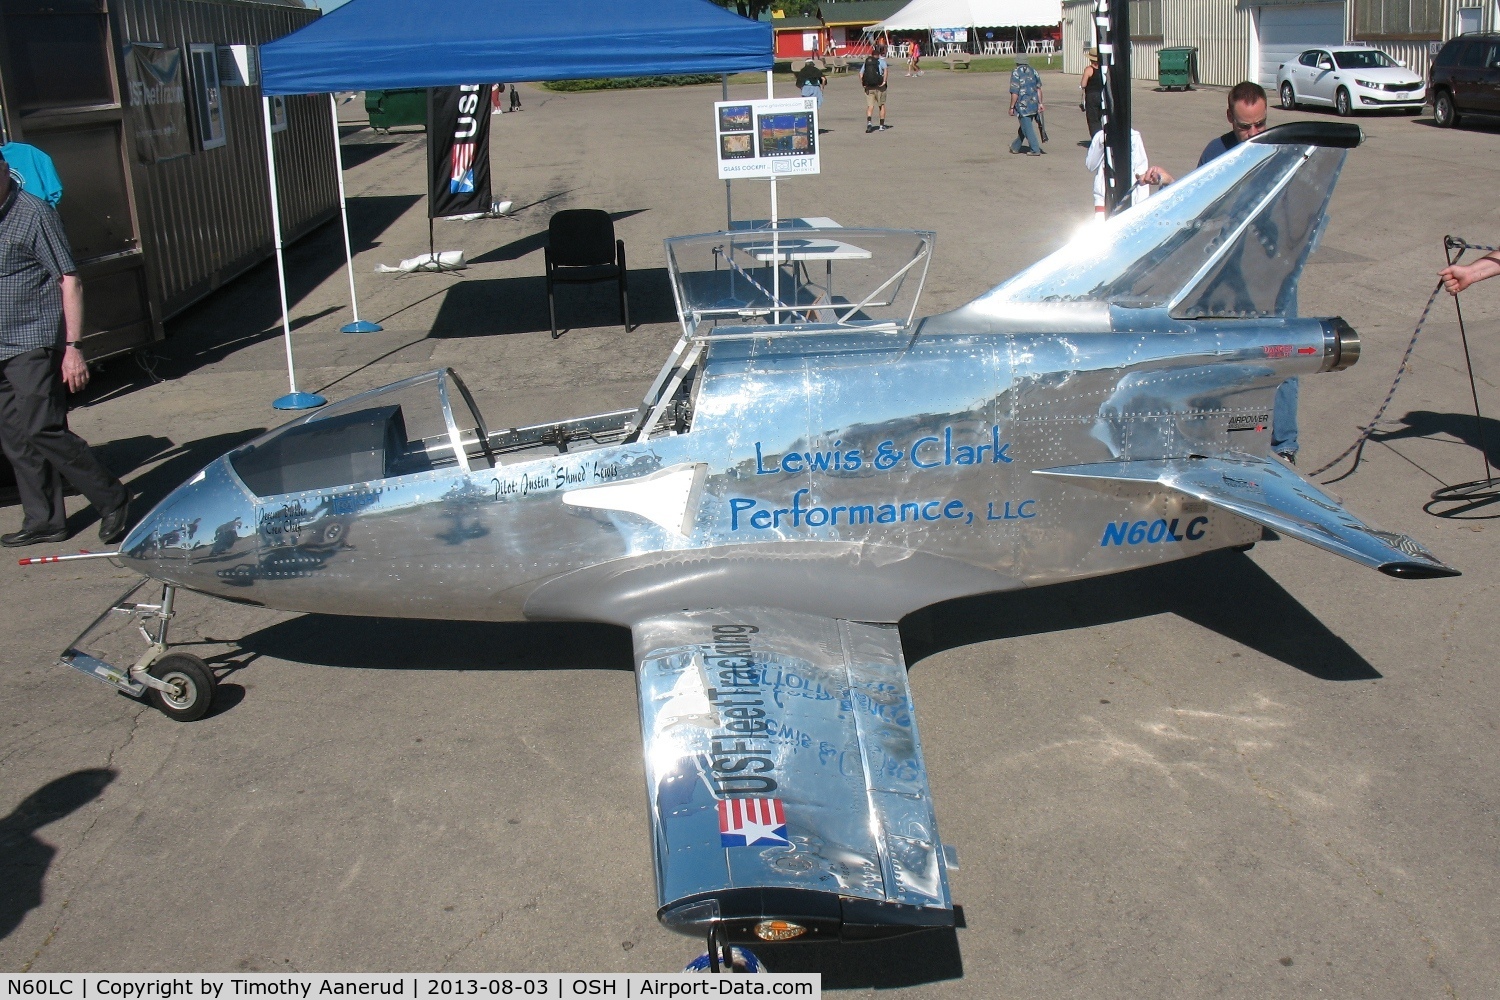 N60LC, 2010 Bede BD-5J Acrostar Jet C/N 2010701, FLS MICROJET, c/n: 2010701